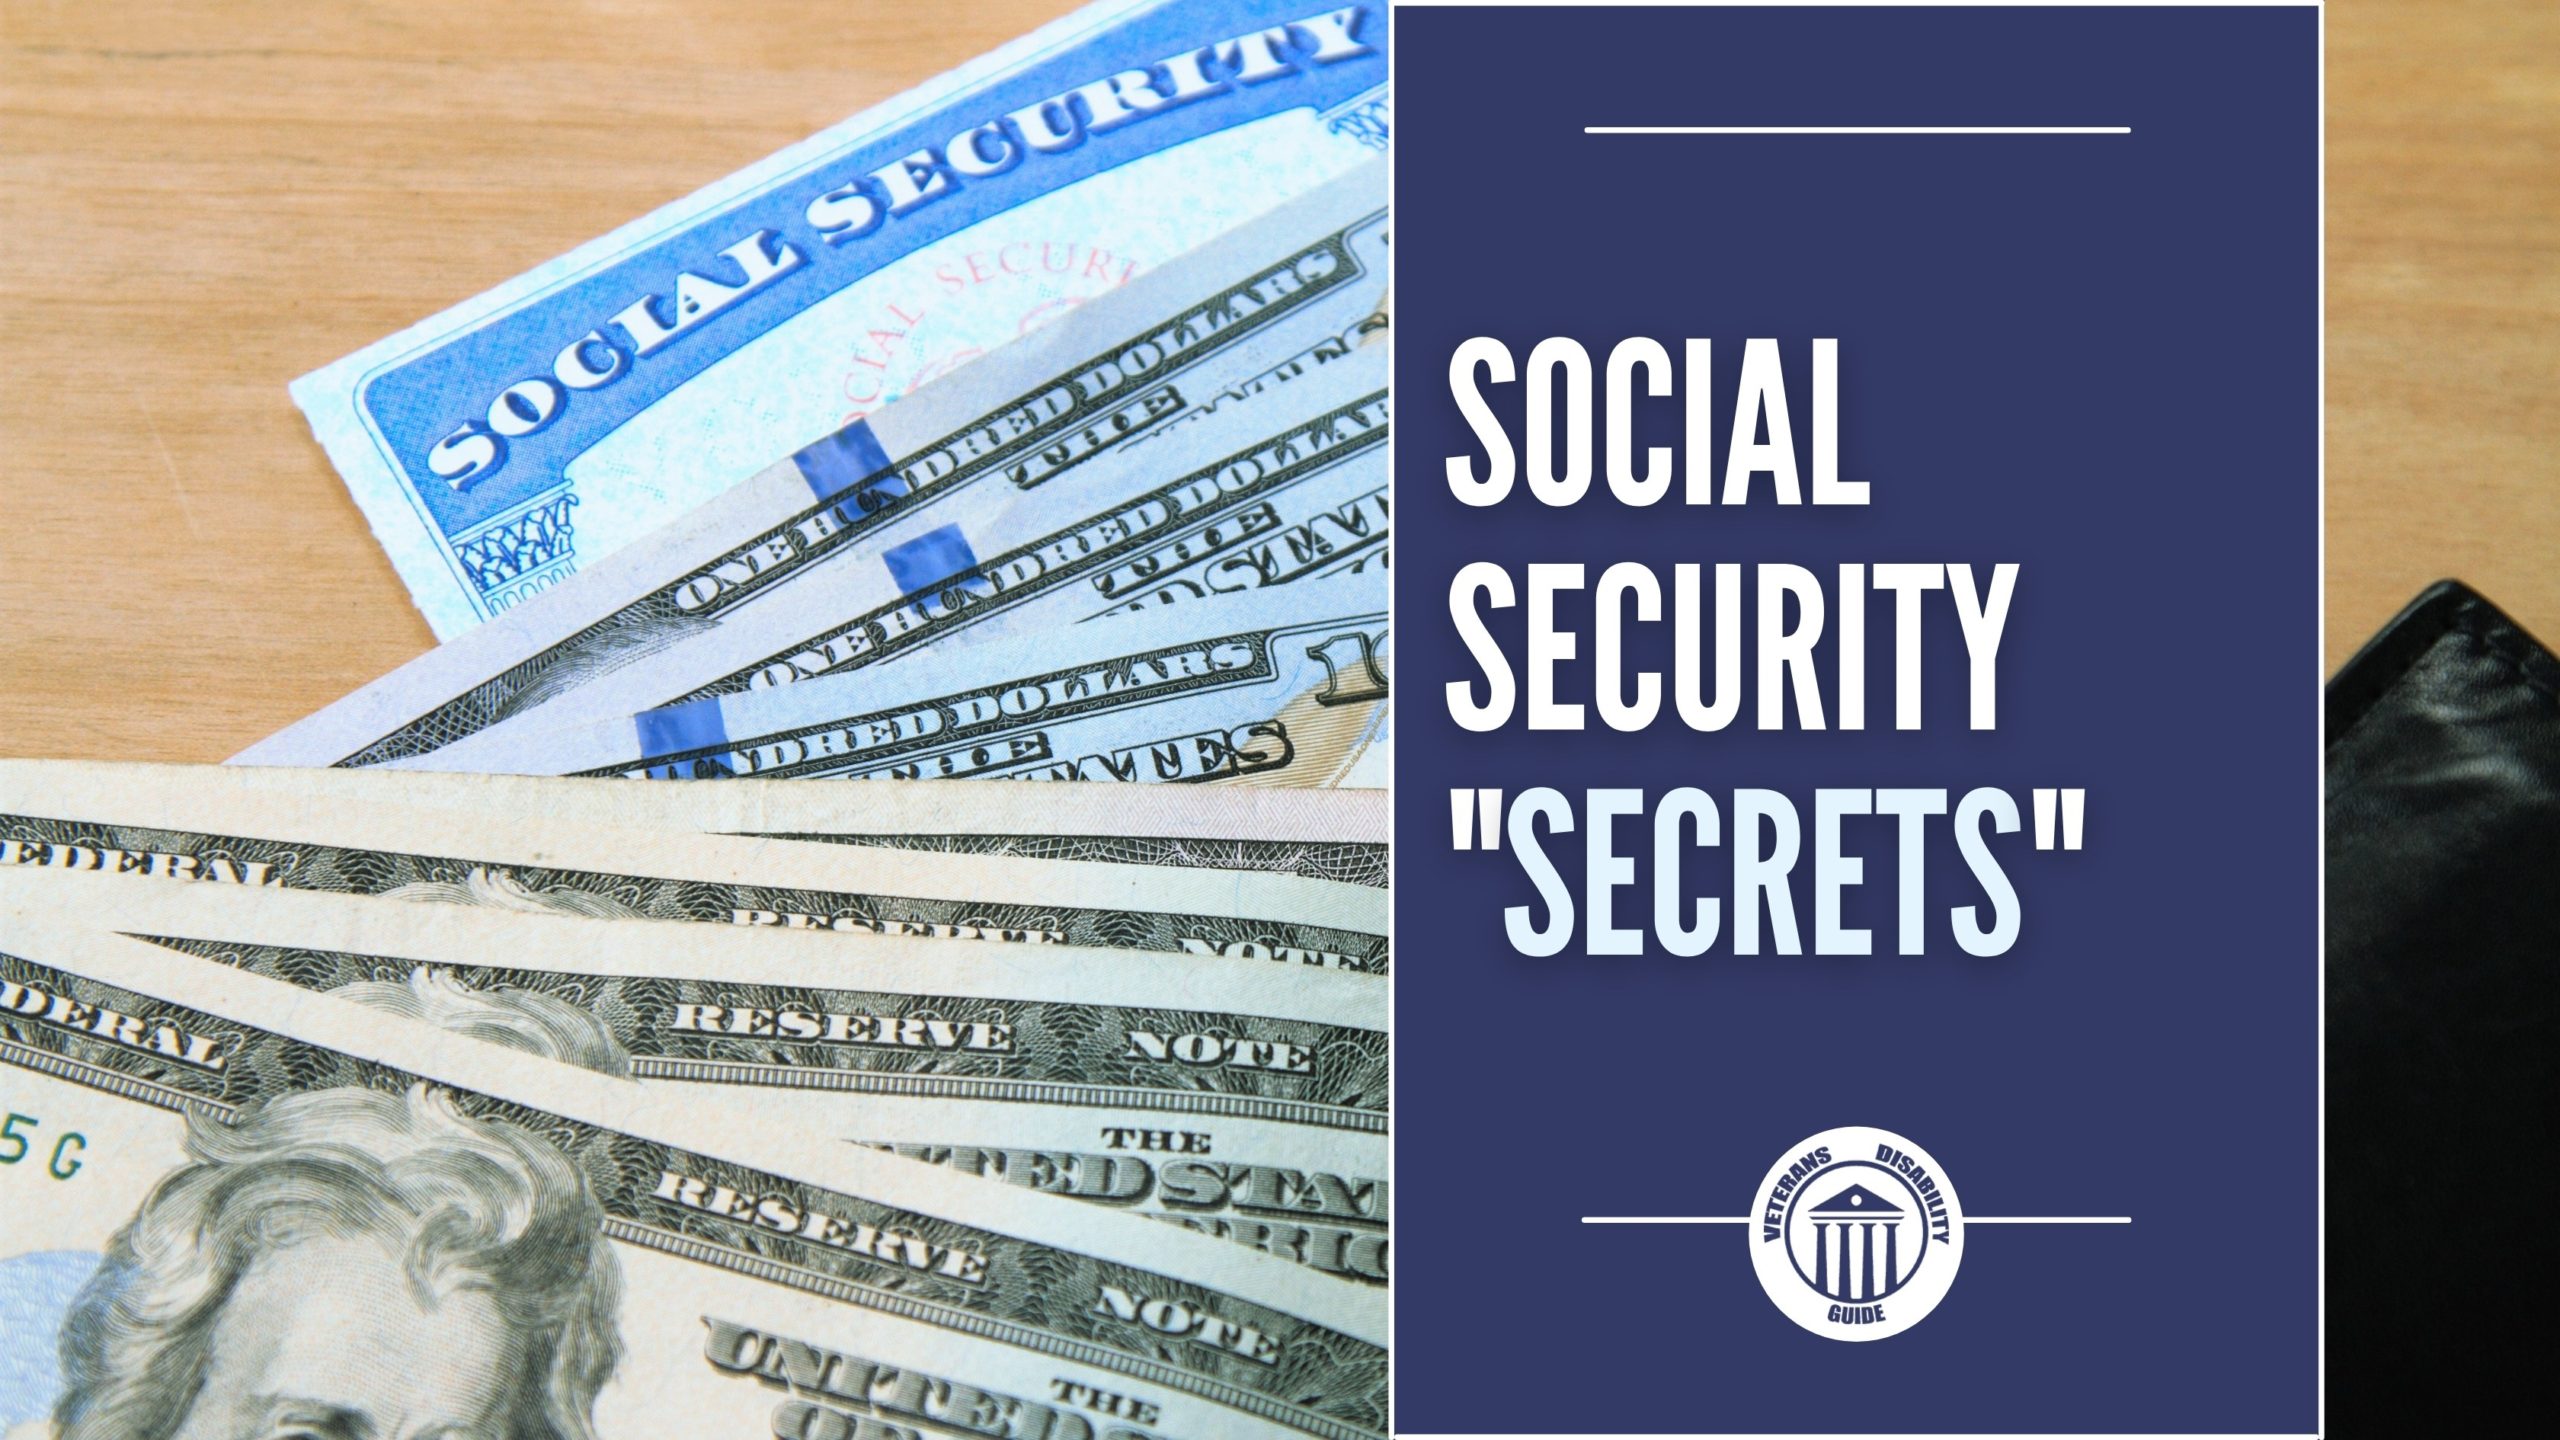 Social Security Secrets blog header image